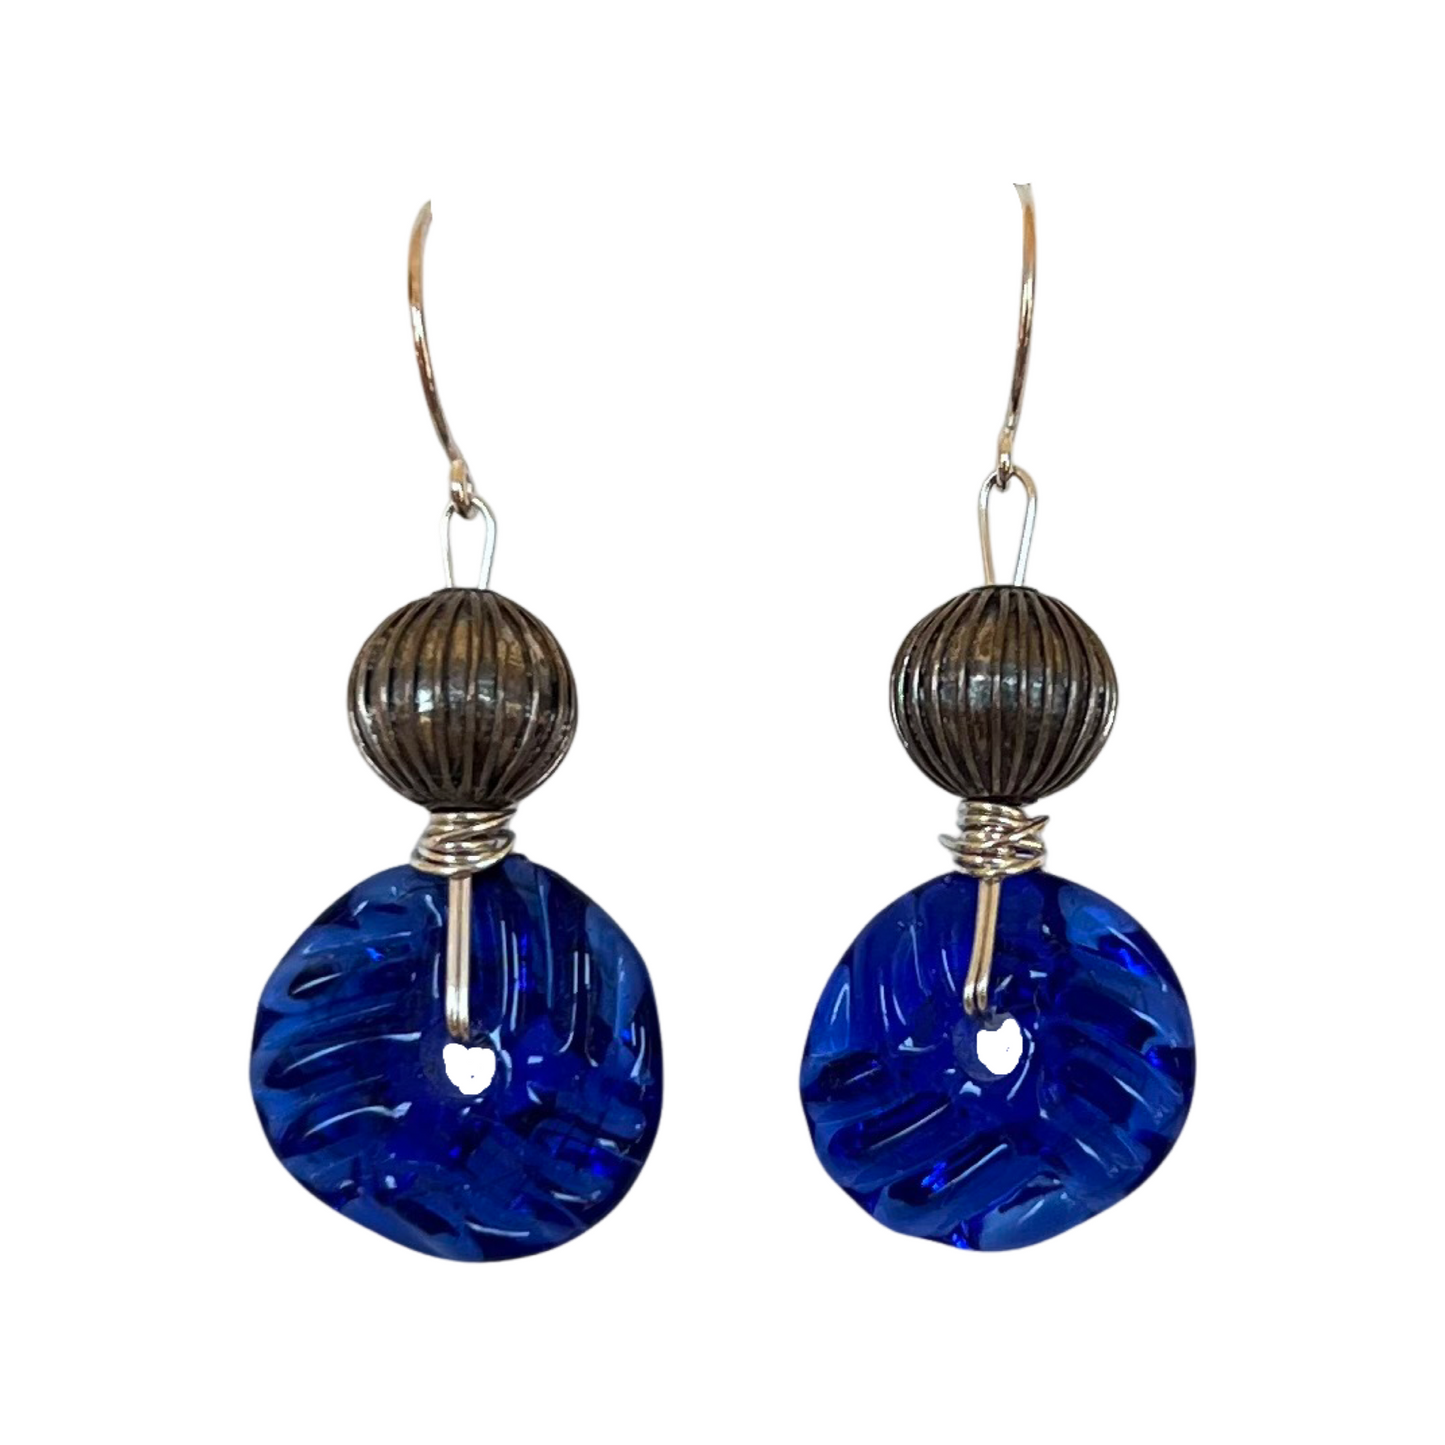 Art Glass Earrings - Ocean Blue